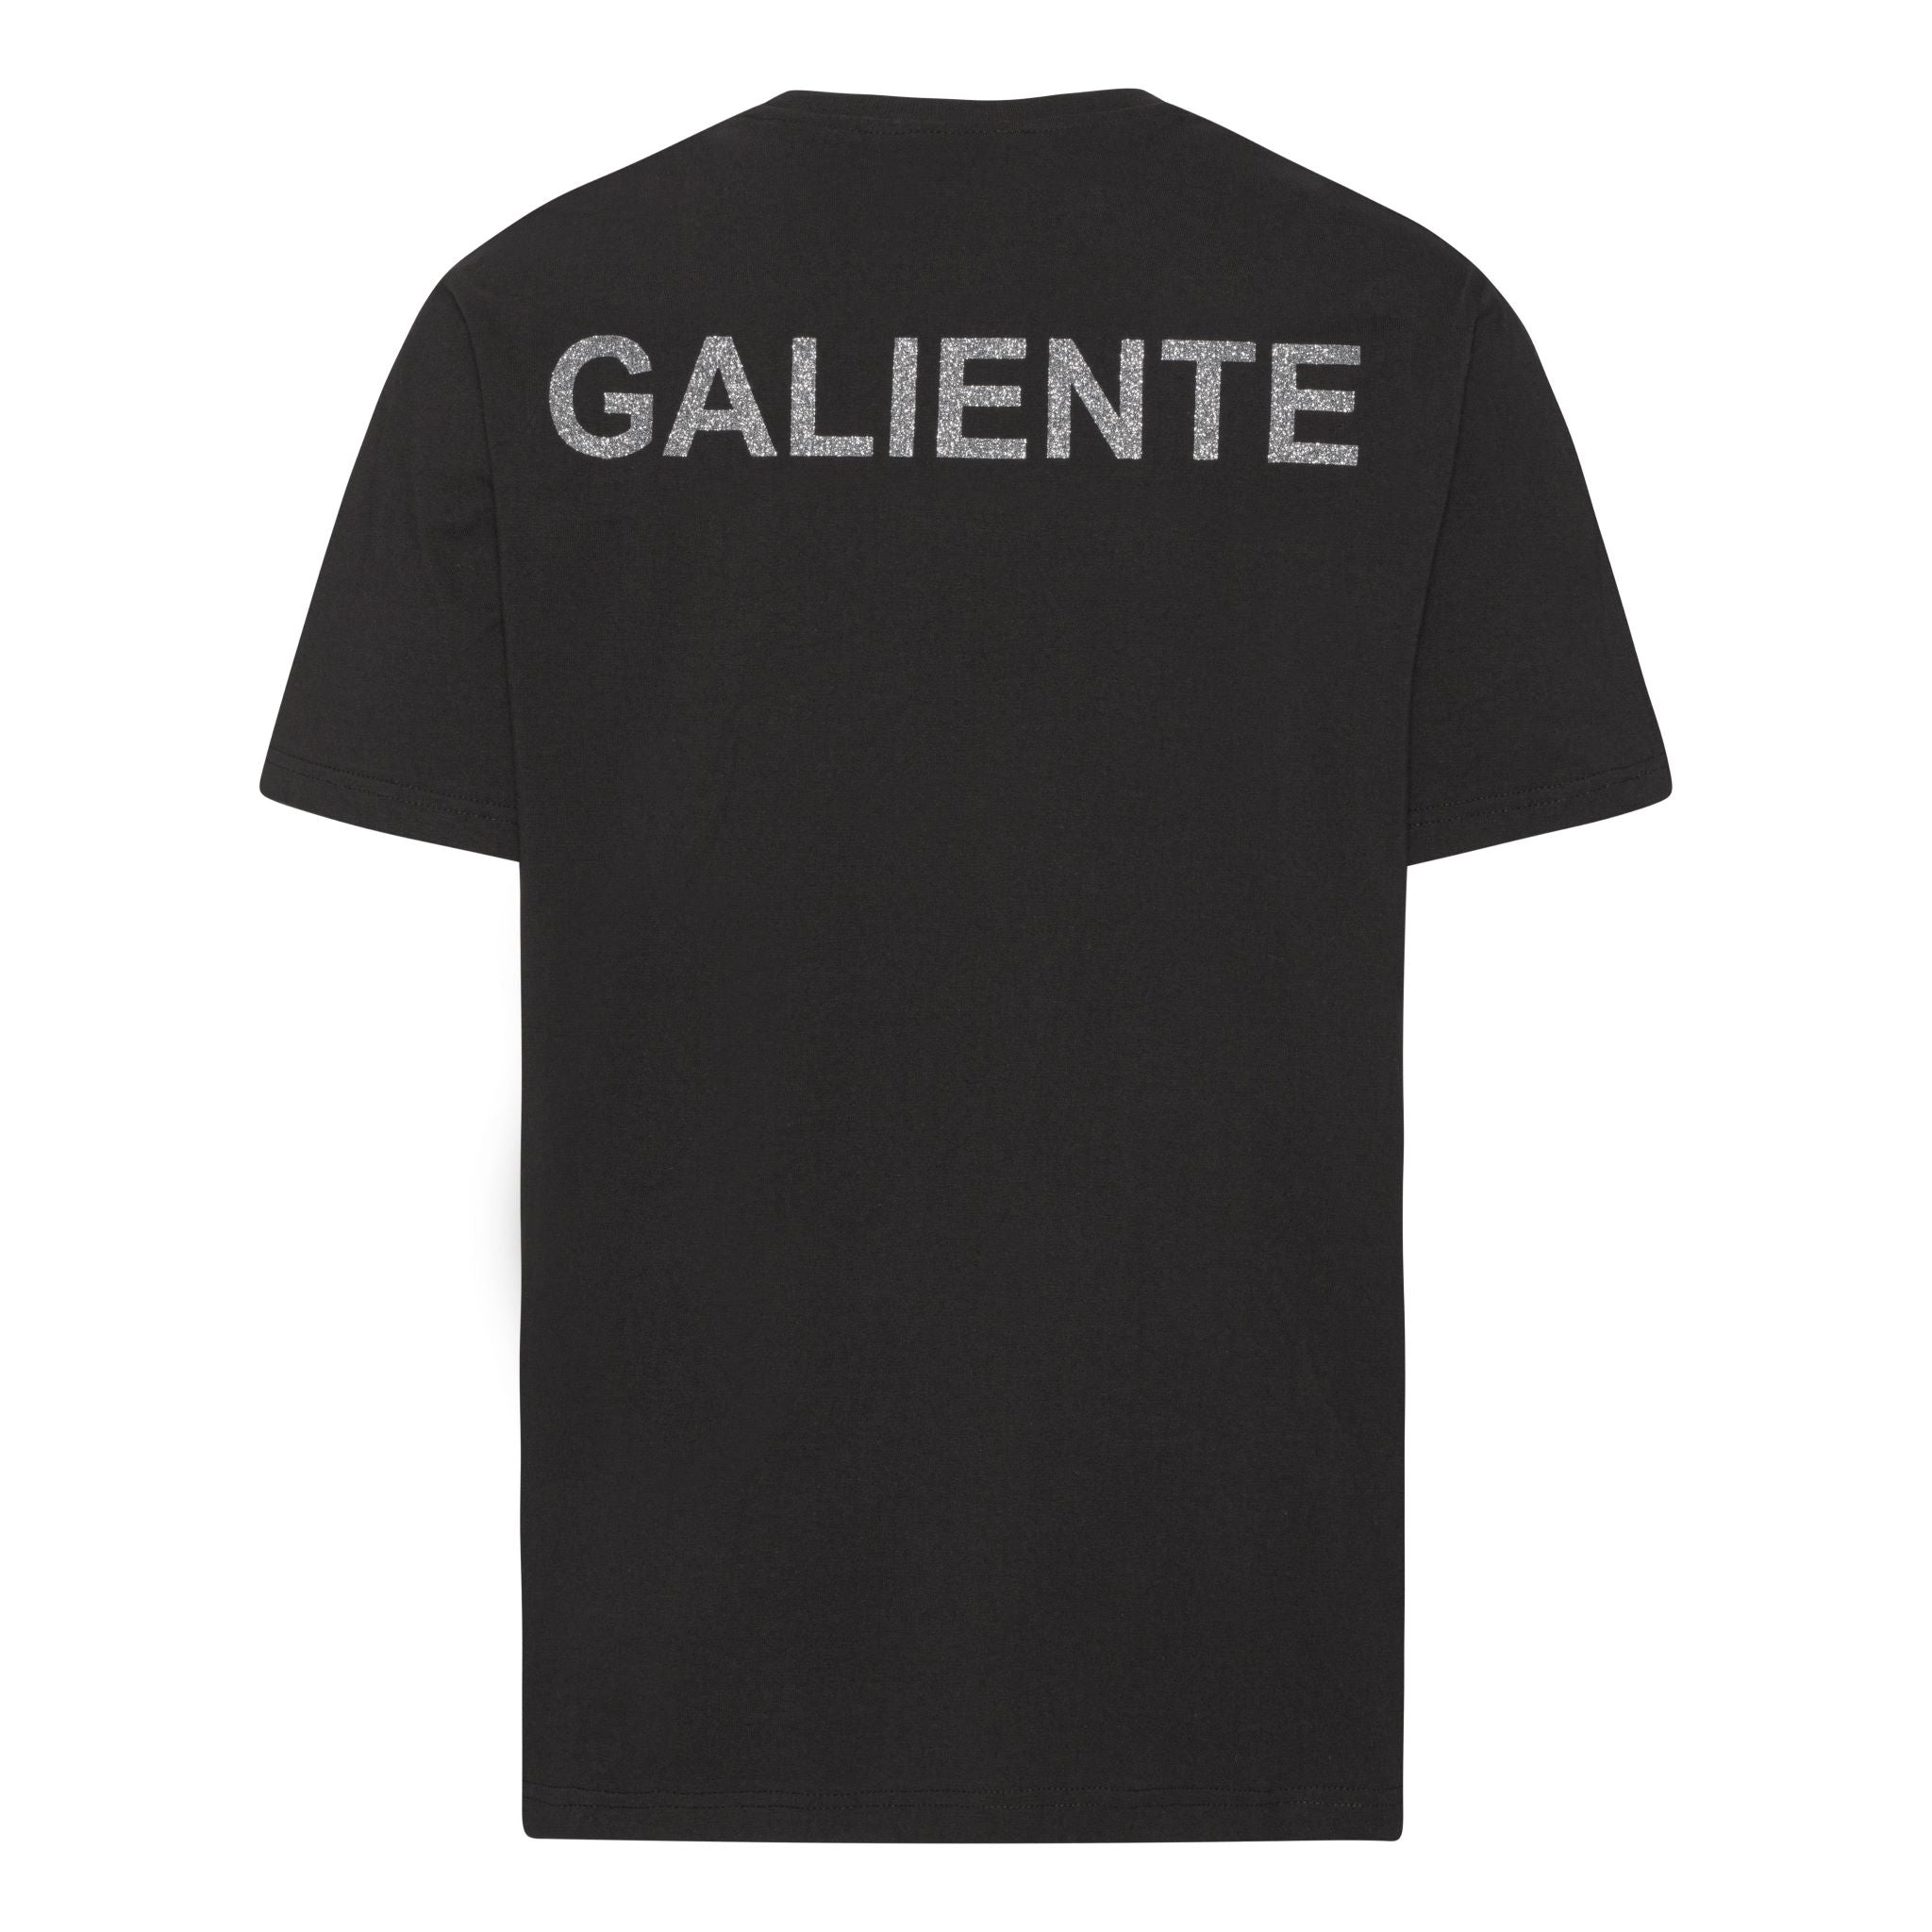 Oversize sort T-shirt med glitter logo print